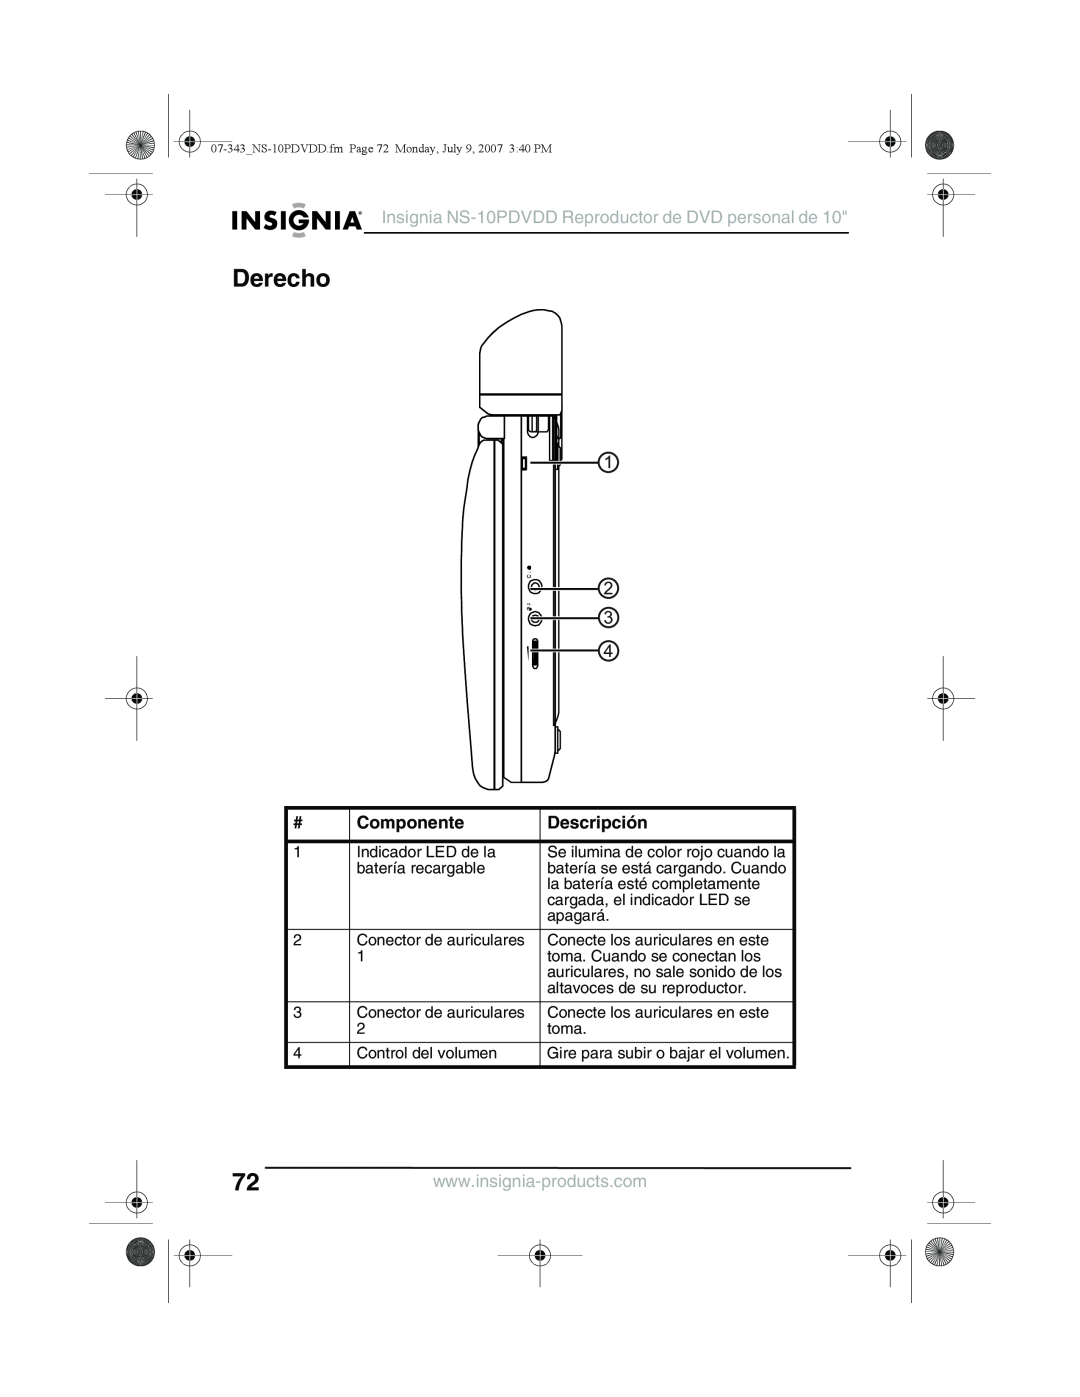 Insignia manual Derecho, Insignia NS-10PDVDD Reproductor de DVD personal de, Componente, Descripción 